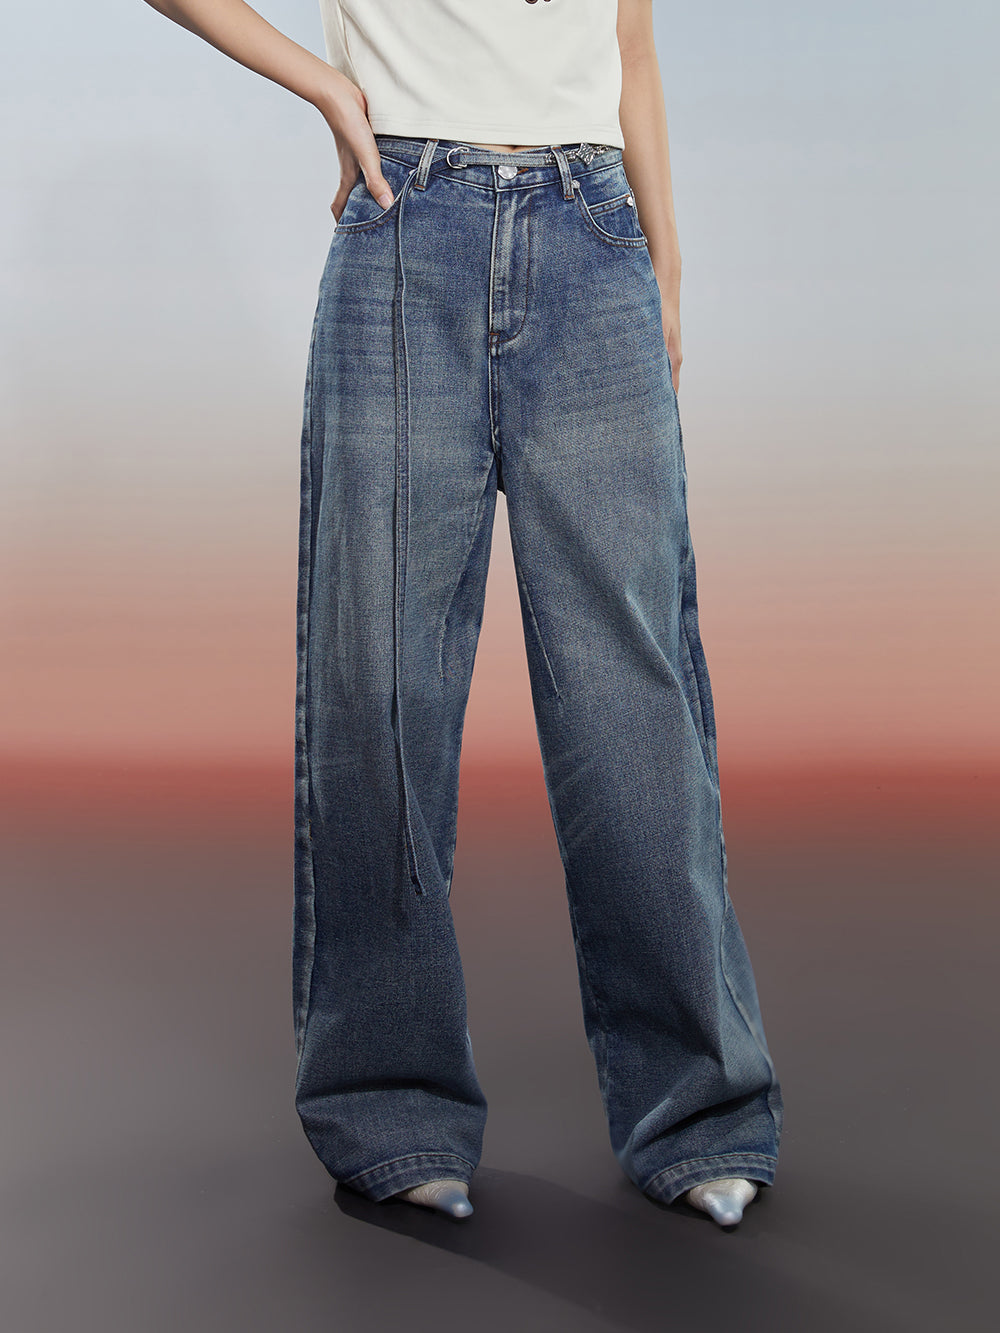 MUKZIN Versatile Classic Comfortable Simple Jeans